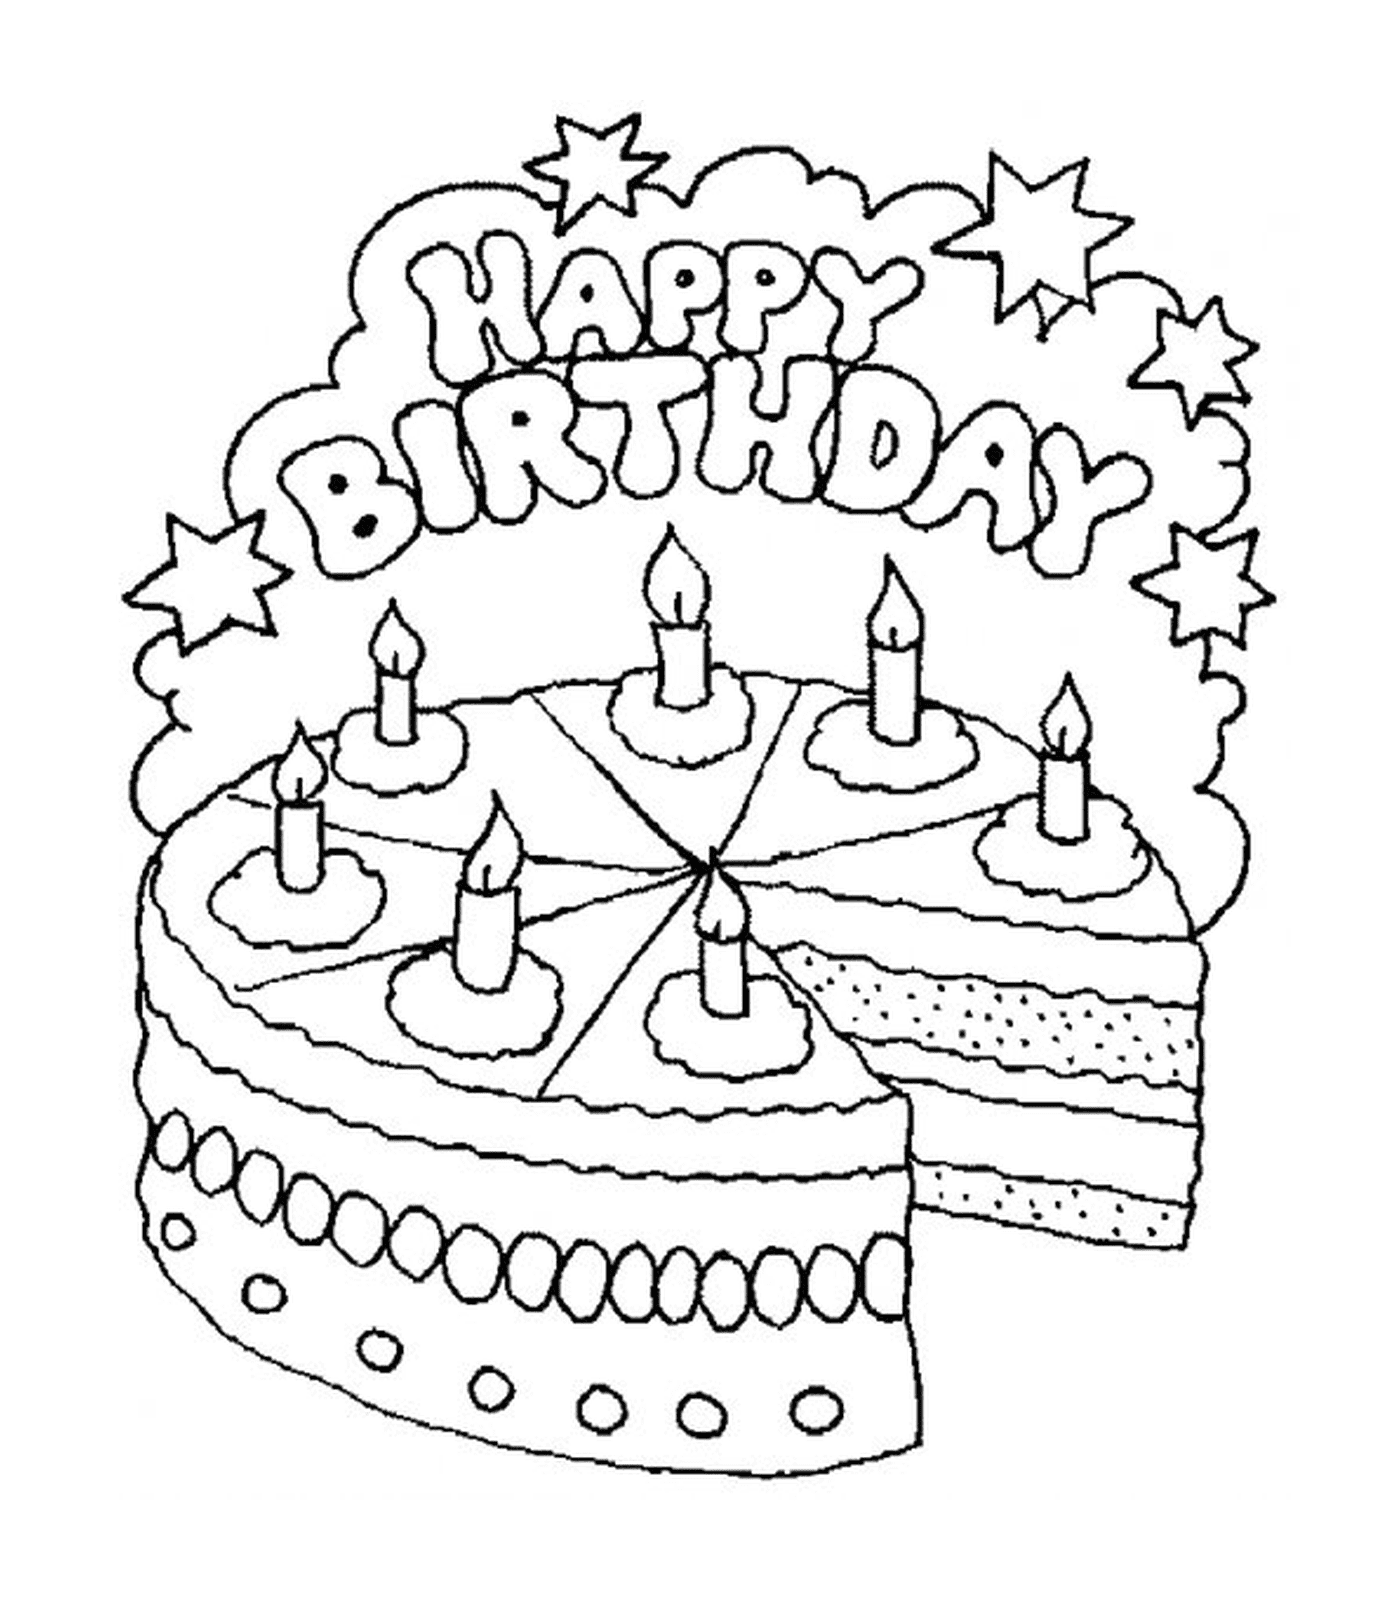  Una torta di compleanno con sei candele 